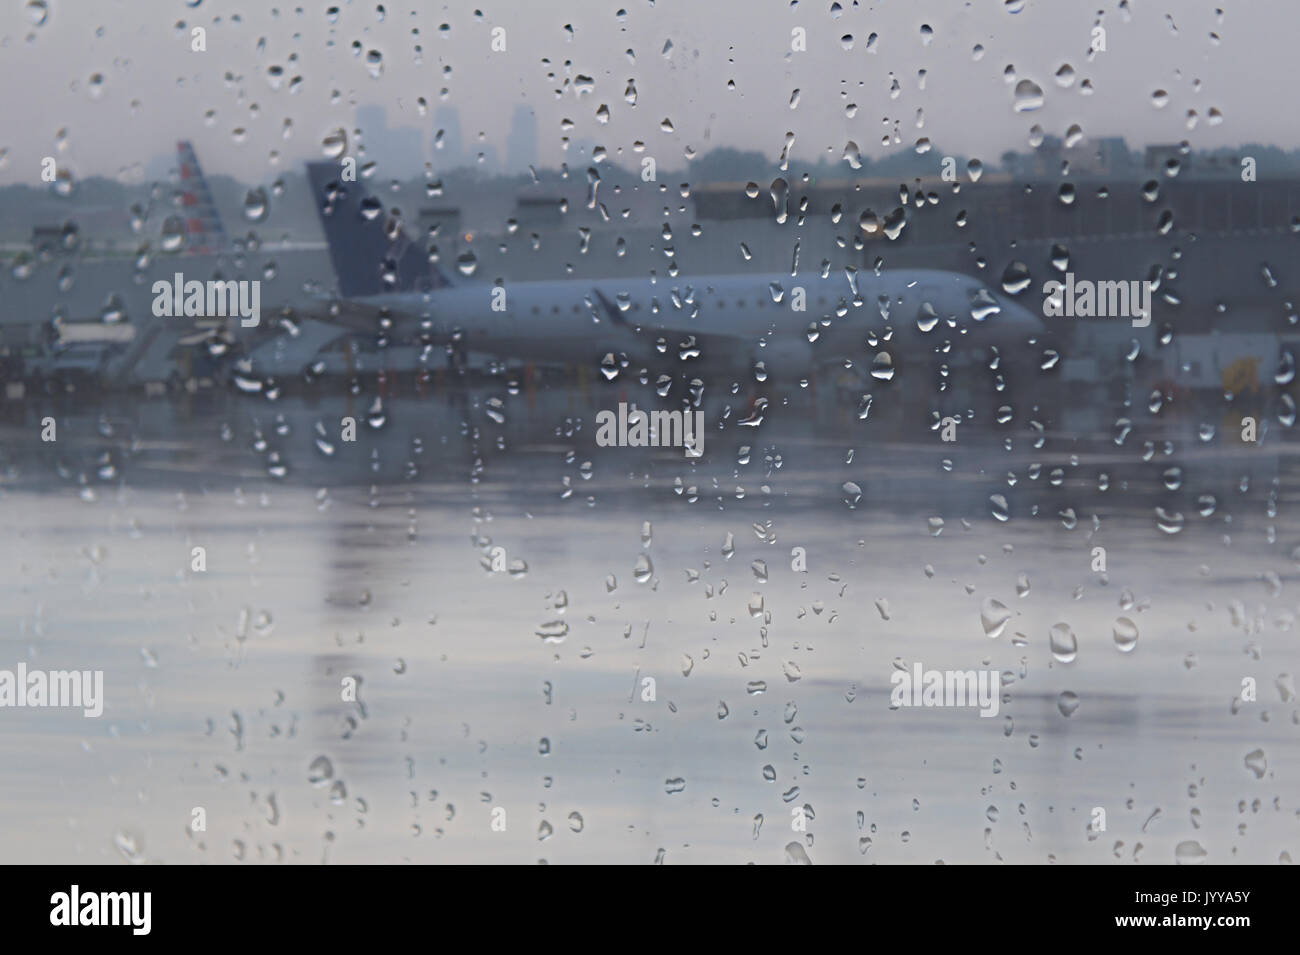 À l'aéroport avion retardé en raison de la tempête de pluie Banque D'Images